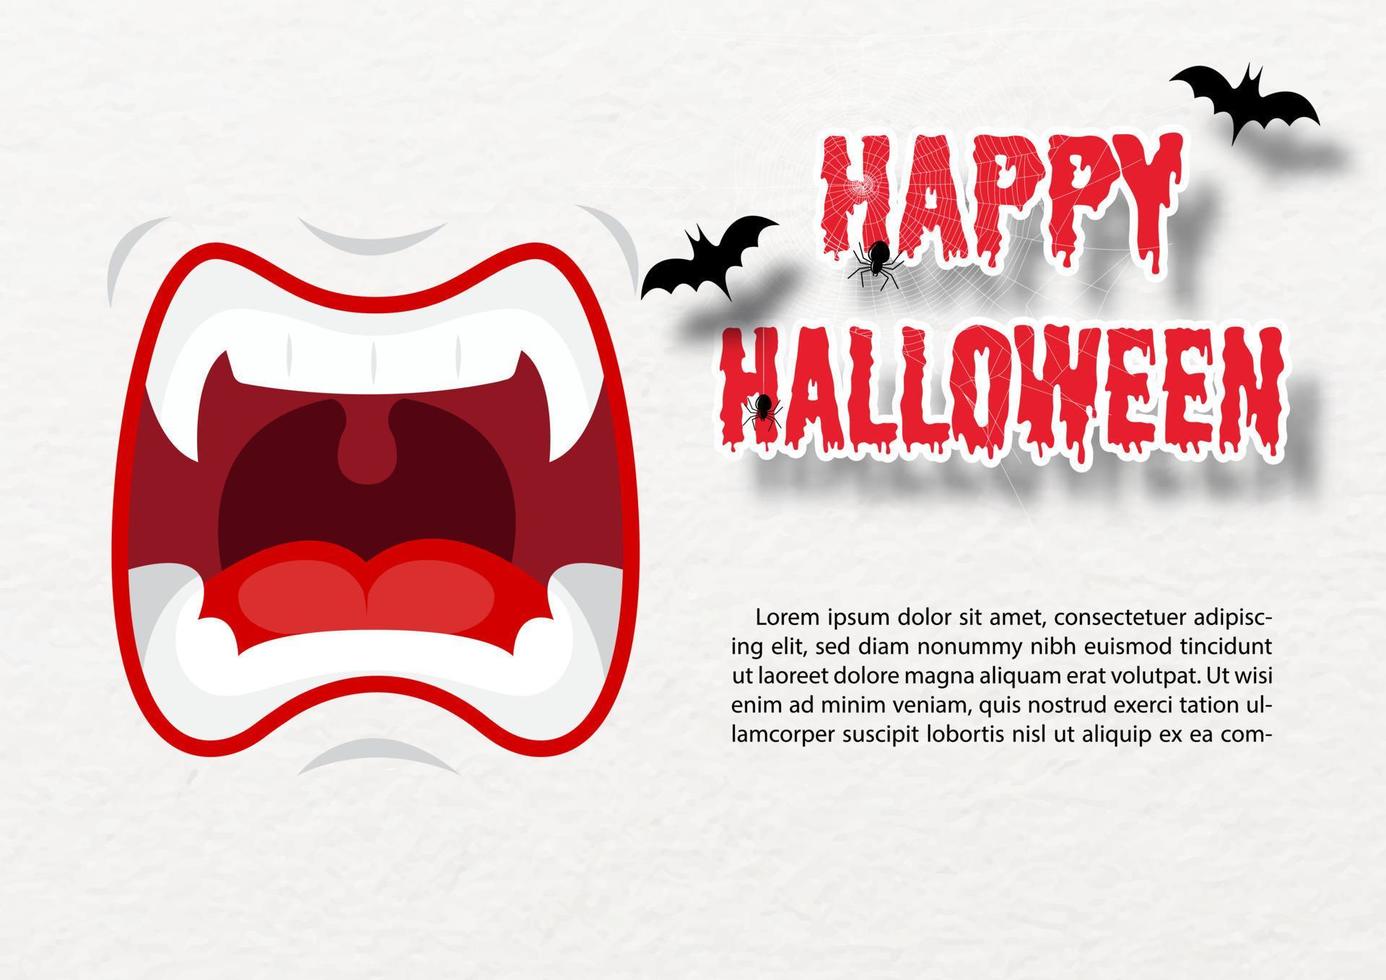 Mund von Dracula böse mit Halloween-Wortlaut, Spinnennetz, fliegenden Fledermäusen und Beispieltexten auf weißem Papiermusterhintergrund. halloween-grußkarte im papierschnittstil und vektordesign. vektor